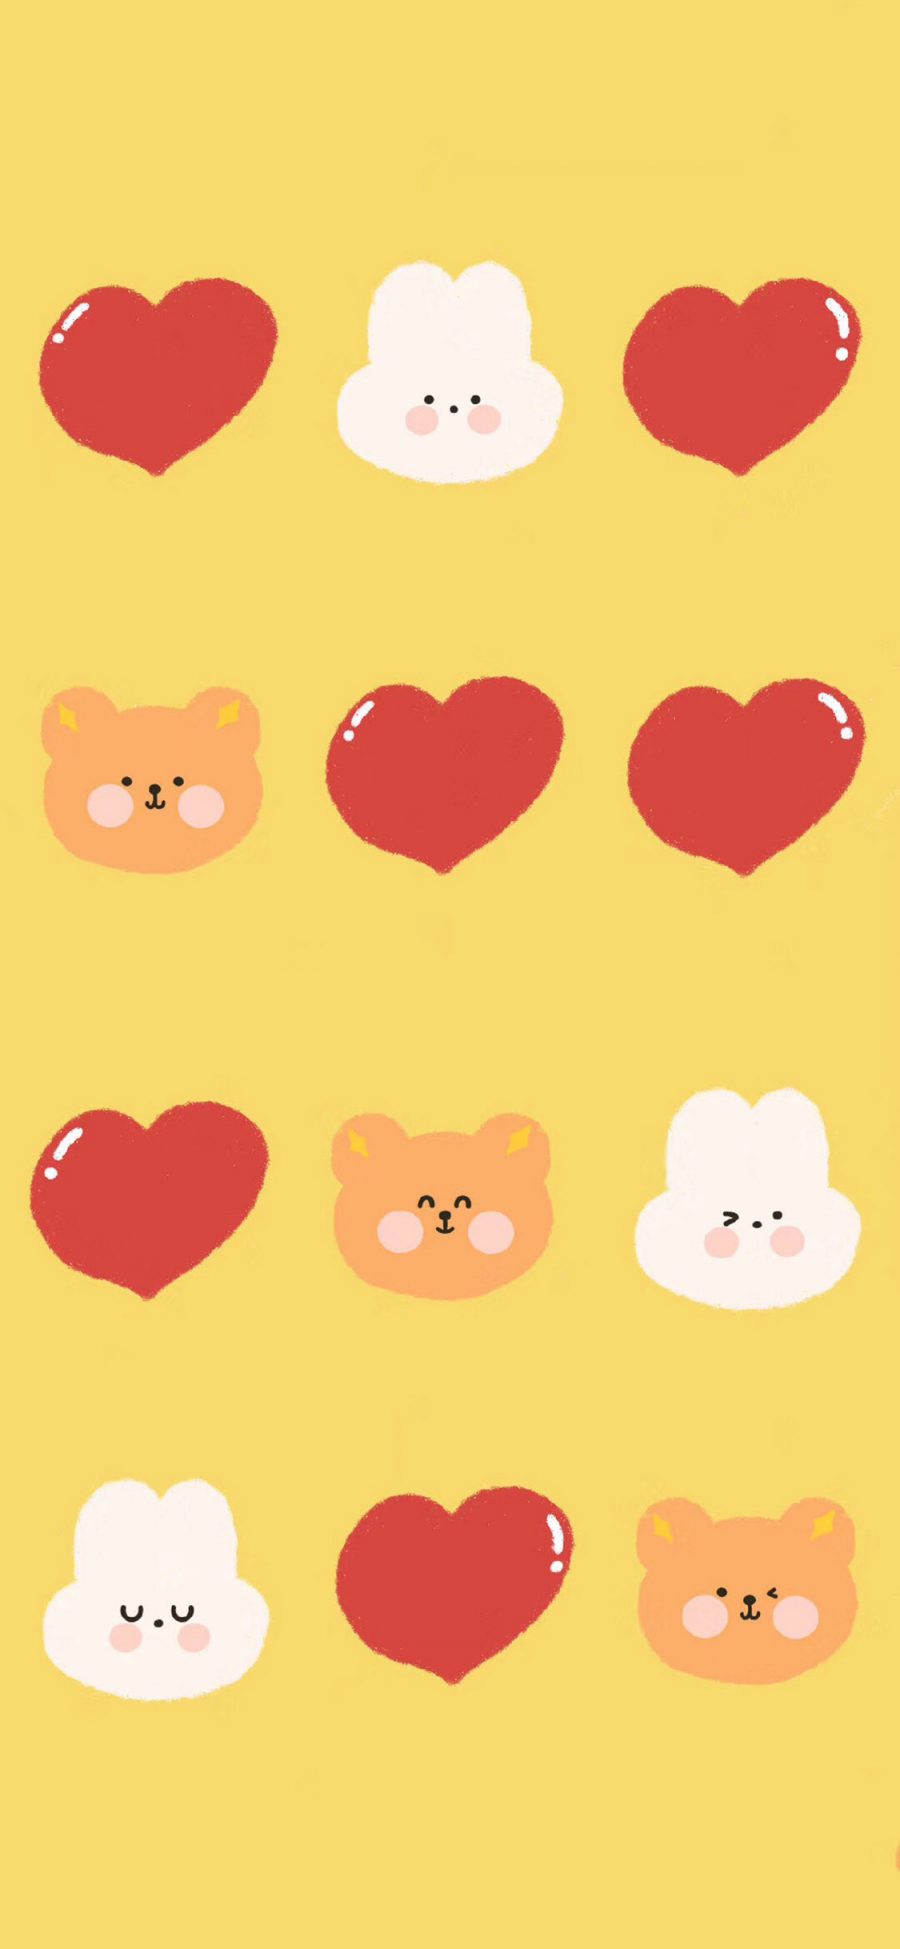 [2436×1125]插图 小熊 兔子 爱心 平铺（取自微博：请你吃番茄呀） 苹果手机动漫壁纸图片